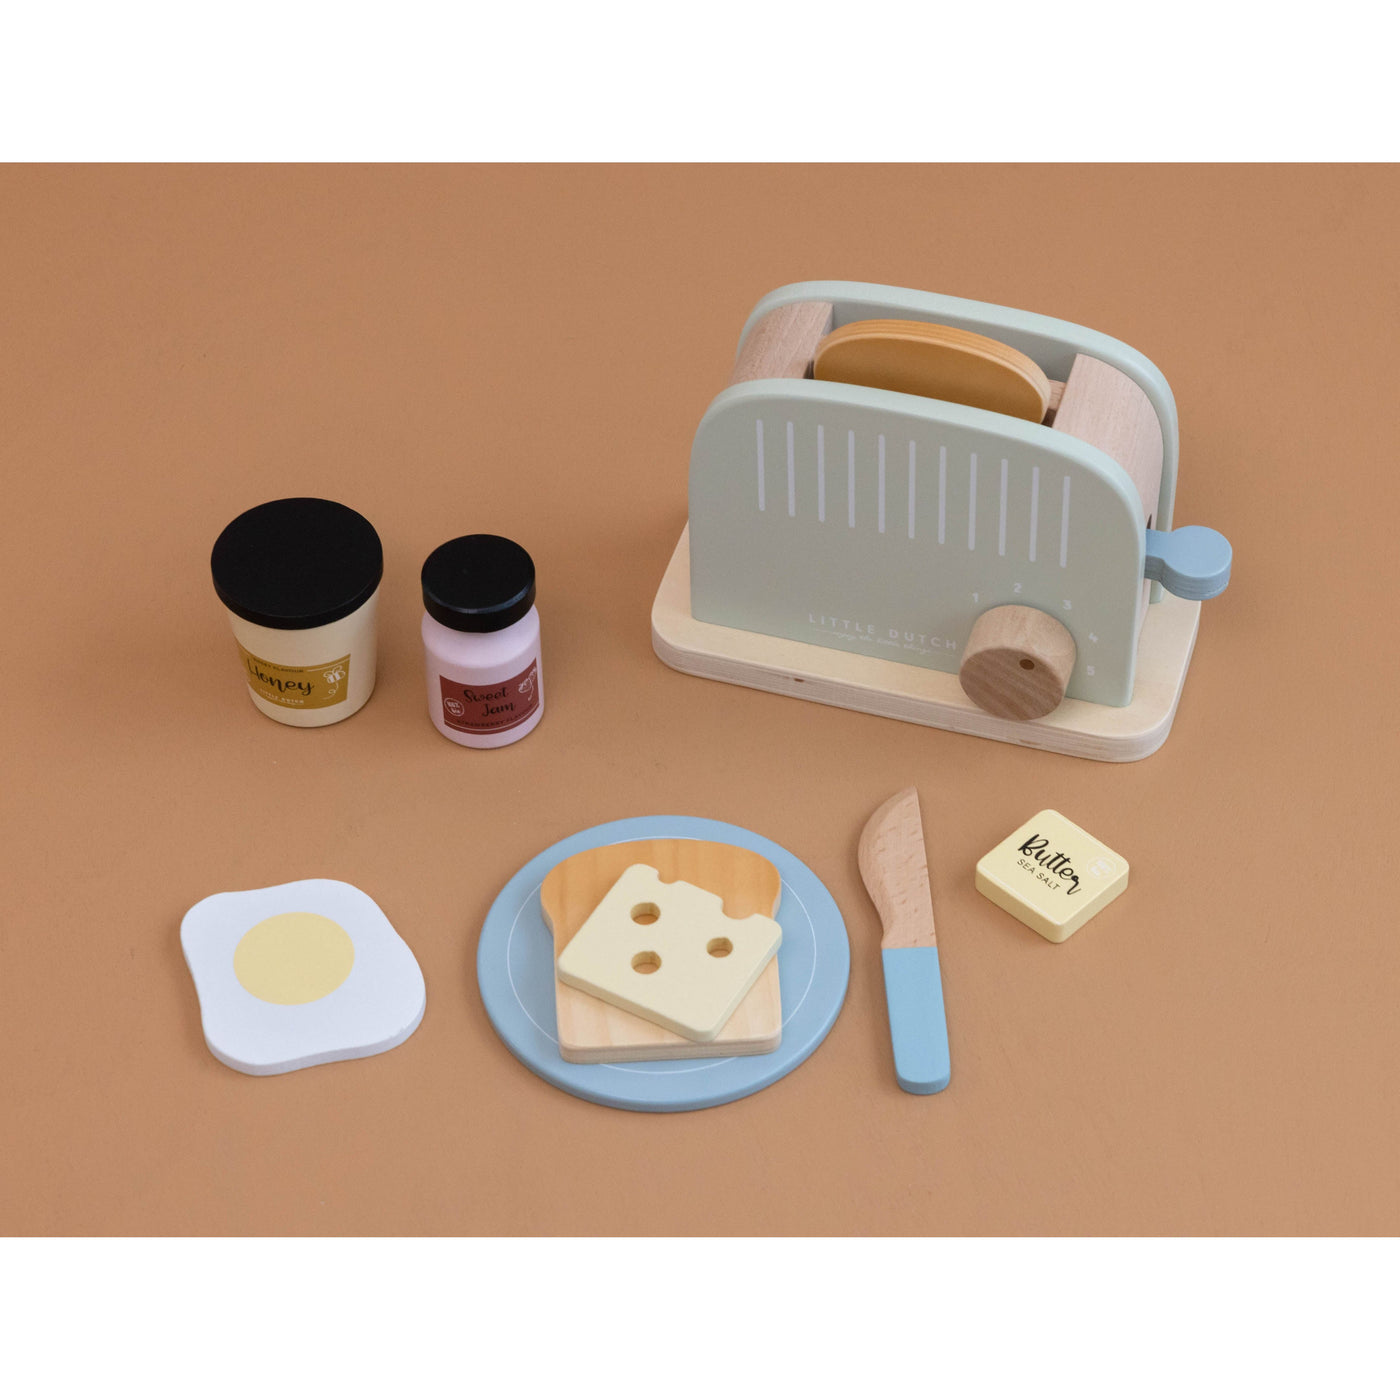 Toaster din lemn FSC - Little Dutch